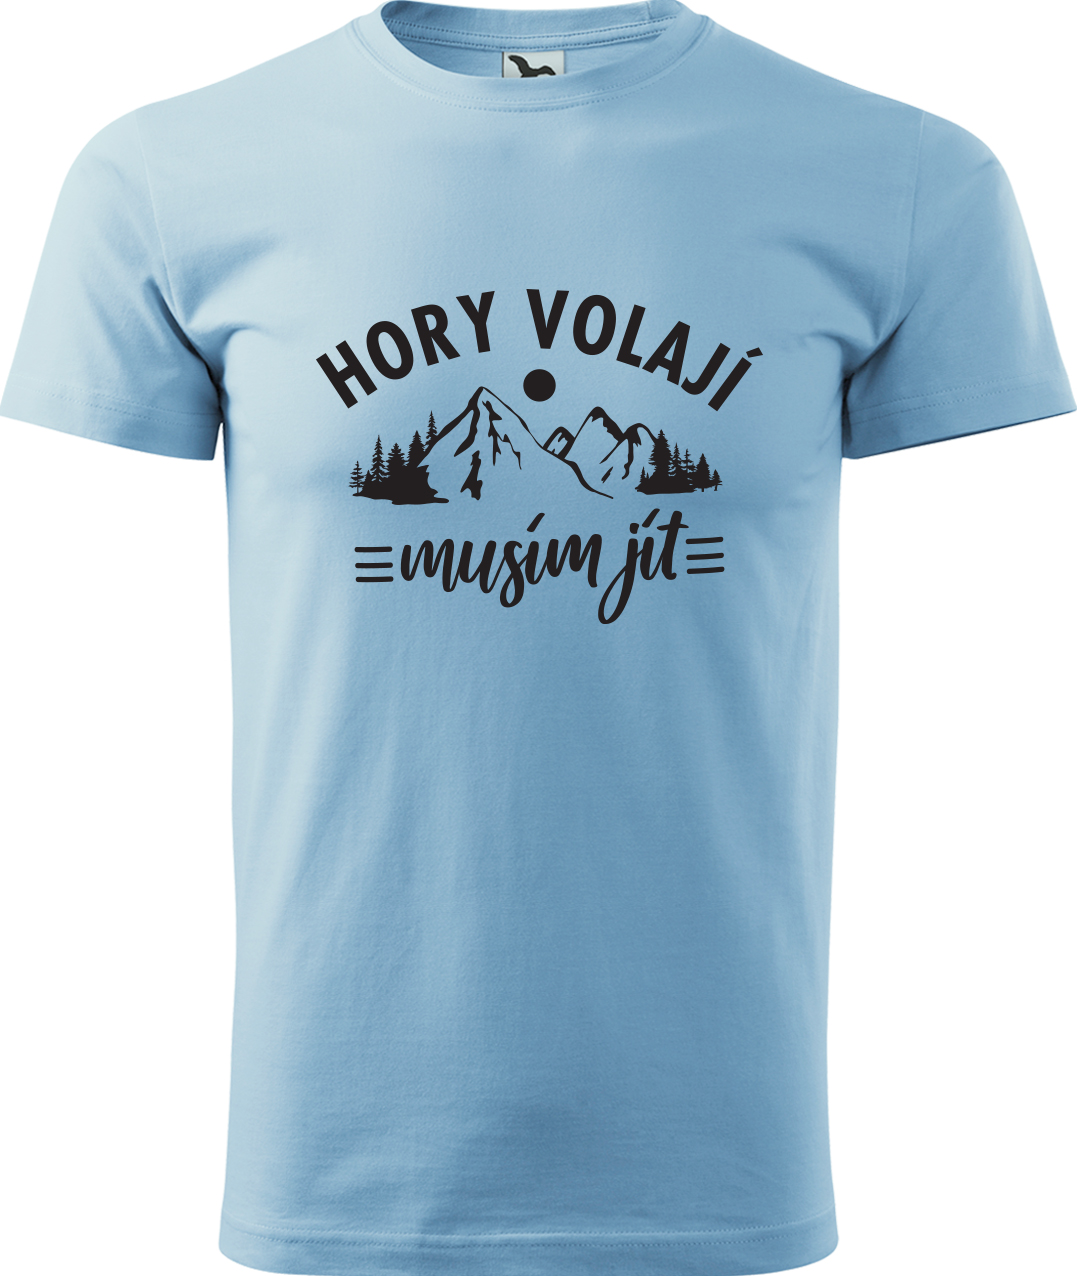 Pánské tričko na hory - Hory volají, musím jít Velikost: M, Barva: Nebesky modrá (15), Střih: pánský